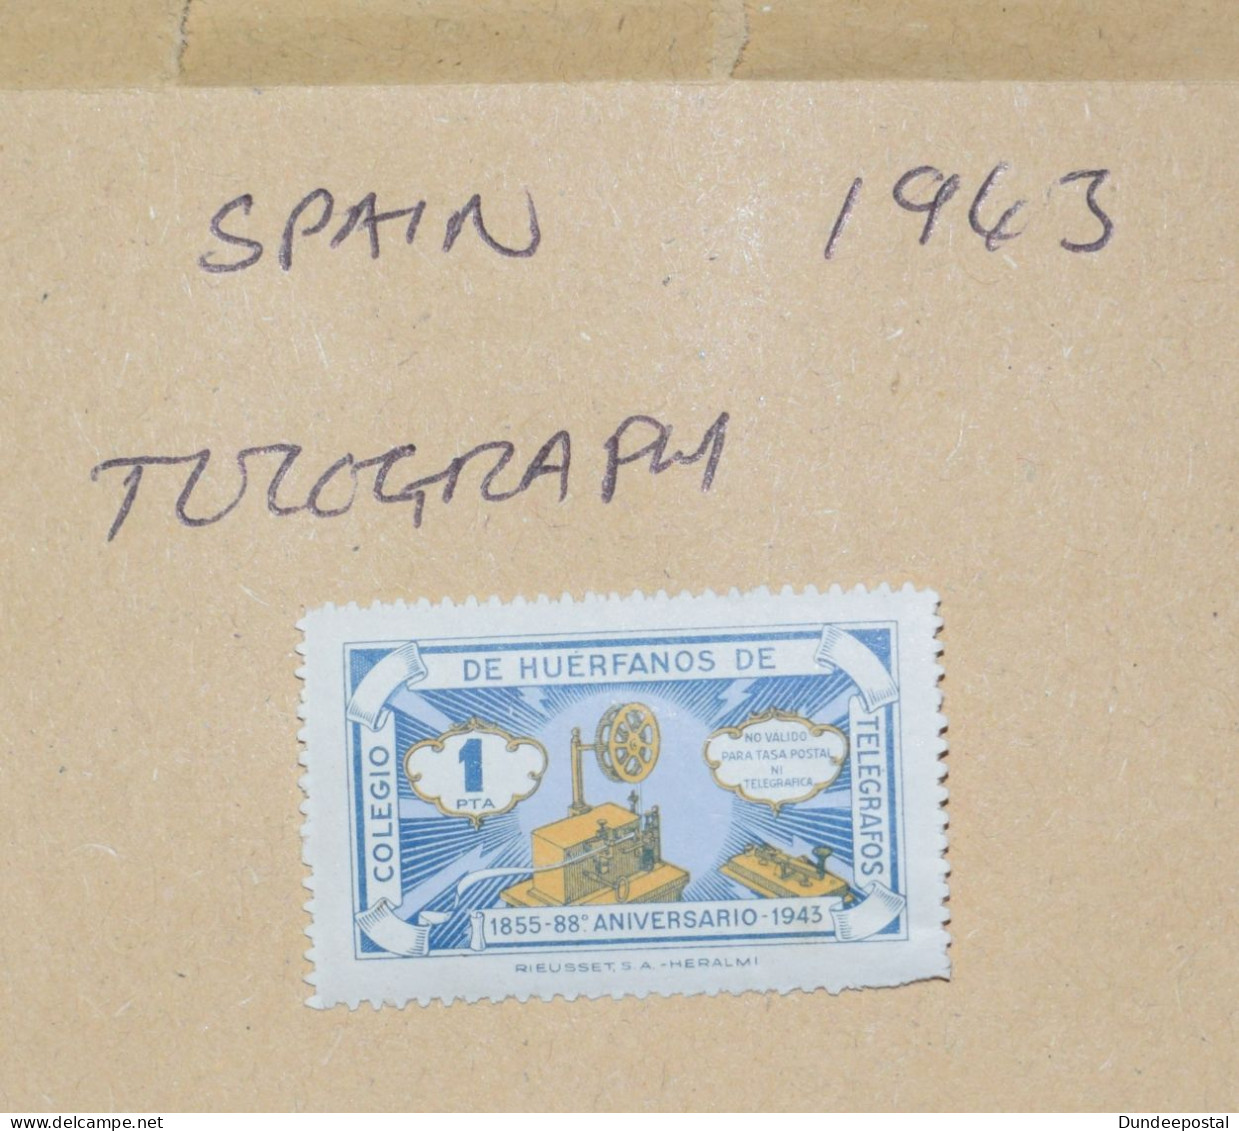 SPAIN  STAMPS  Telegraph 1943 ~~L@@K~~ - Oblitérés